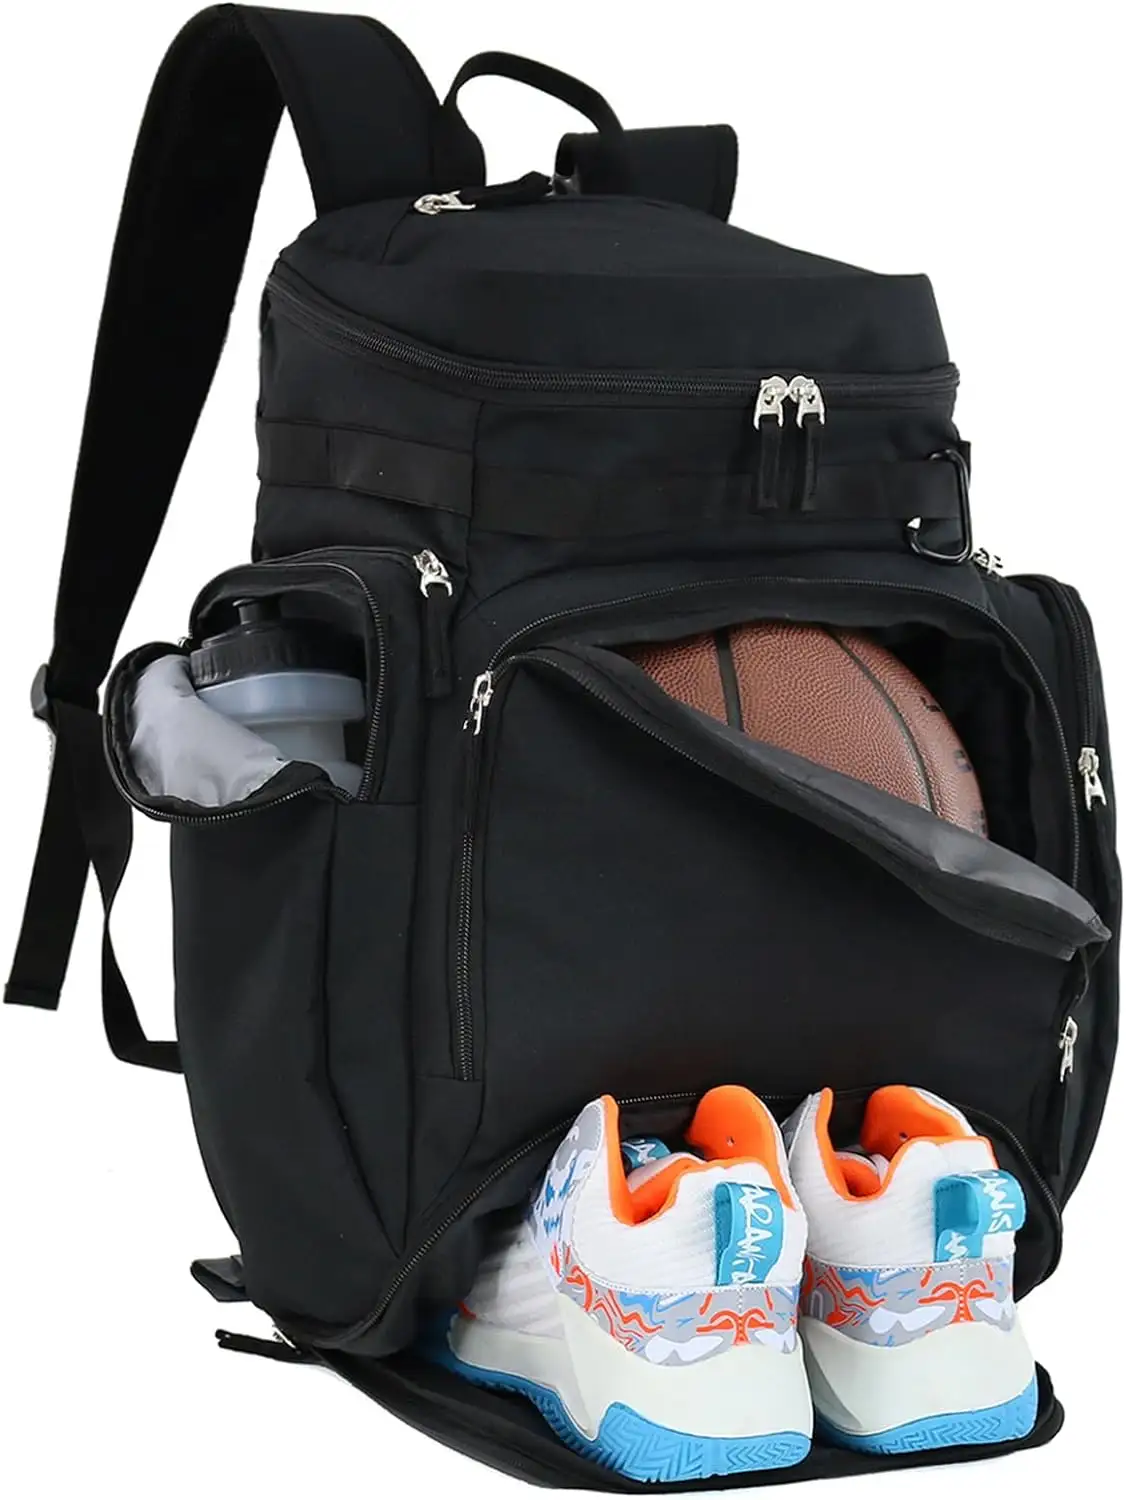 Дизайн индивидуальный футбольный рюкзак спортивный рюкзак сумка баскетбольный рюкзак сумка с большим отделением для обуви и мяча